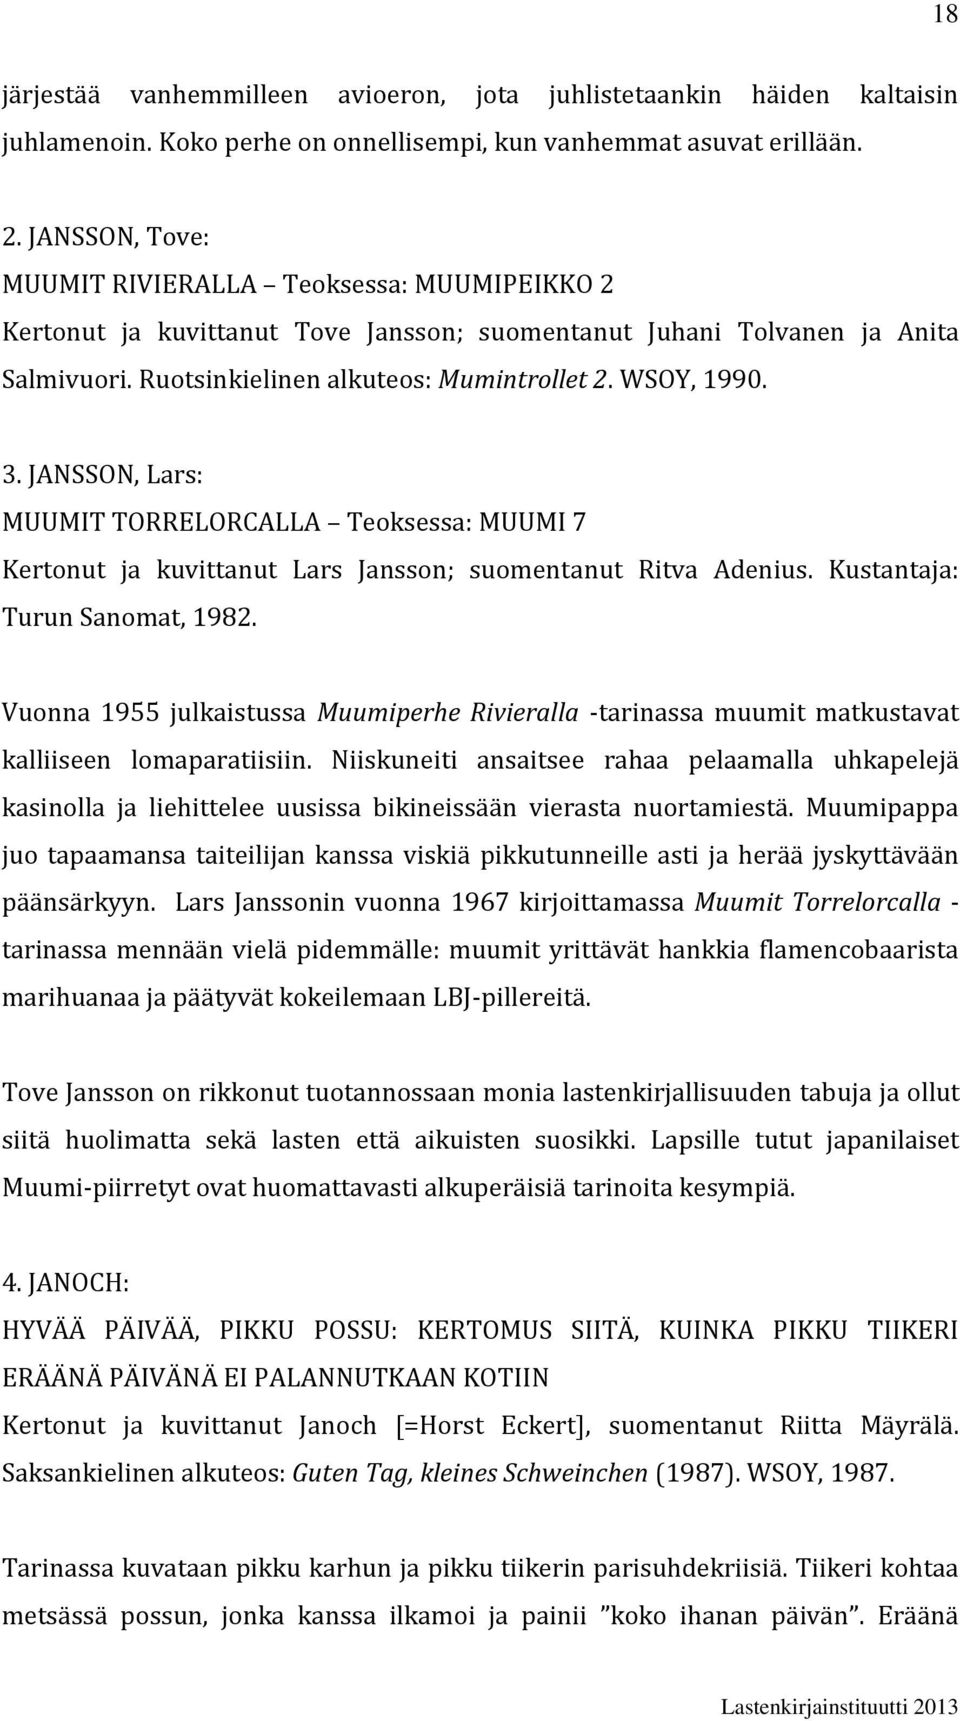 JANSSON, Lars: MUUMIT TORRELORCALLA Teoksessa: MUUMI 7 Kertonut ja kuvittanut Lars Jansson; suomentanut Ritva Adenius. Kustantaja: Turun Sanomat, 1982.